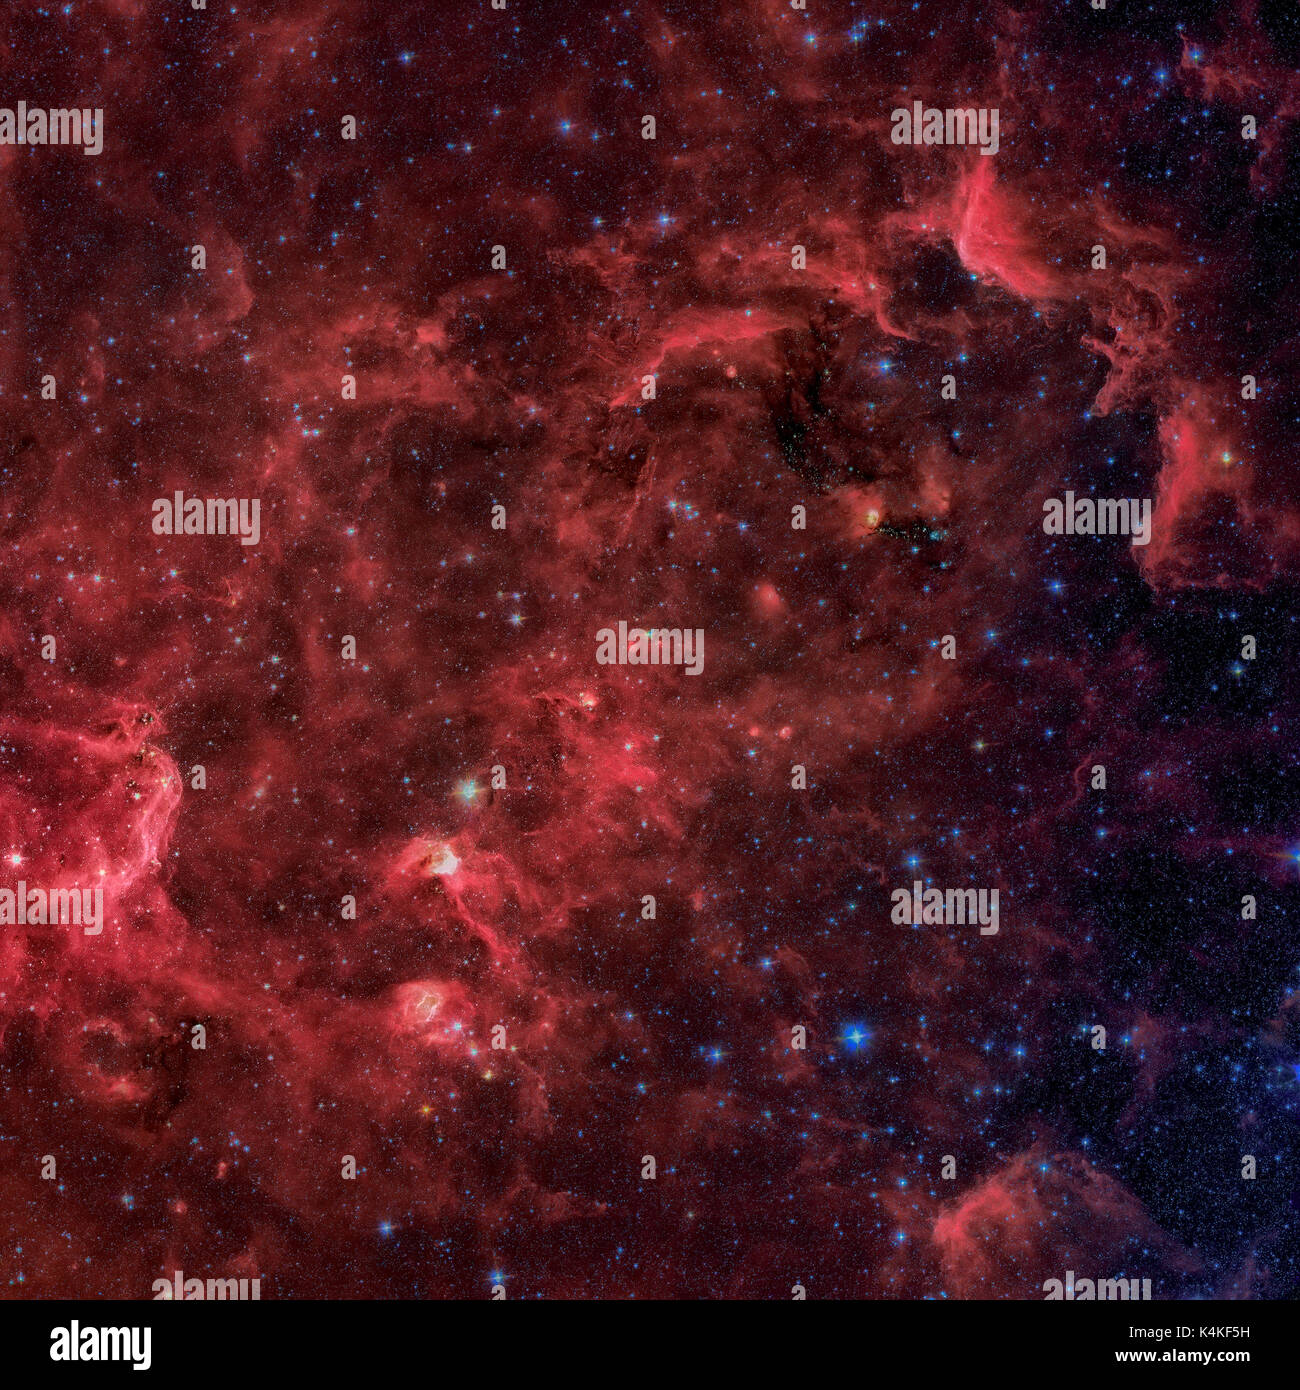 La nébuleuse de l'amérique du nord est une nébuleuse dans la constellation du cygne, à proximité de deneb. vue dans l'infrarouge du télescope spatial Spitzer de la nasa. repiqué Banque D'Images